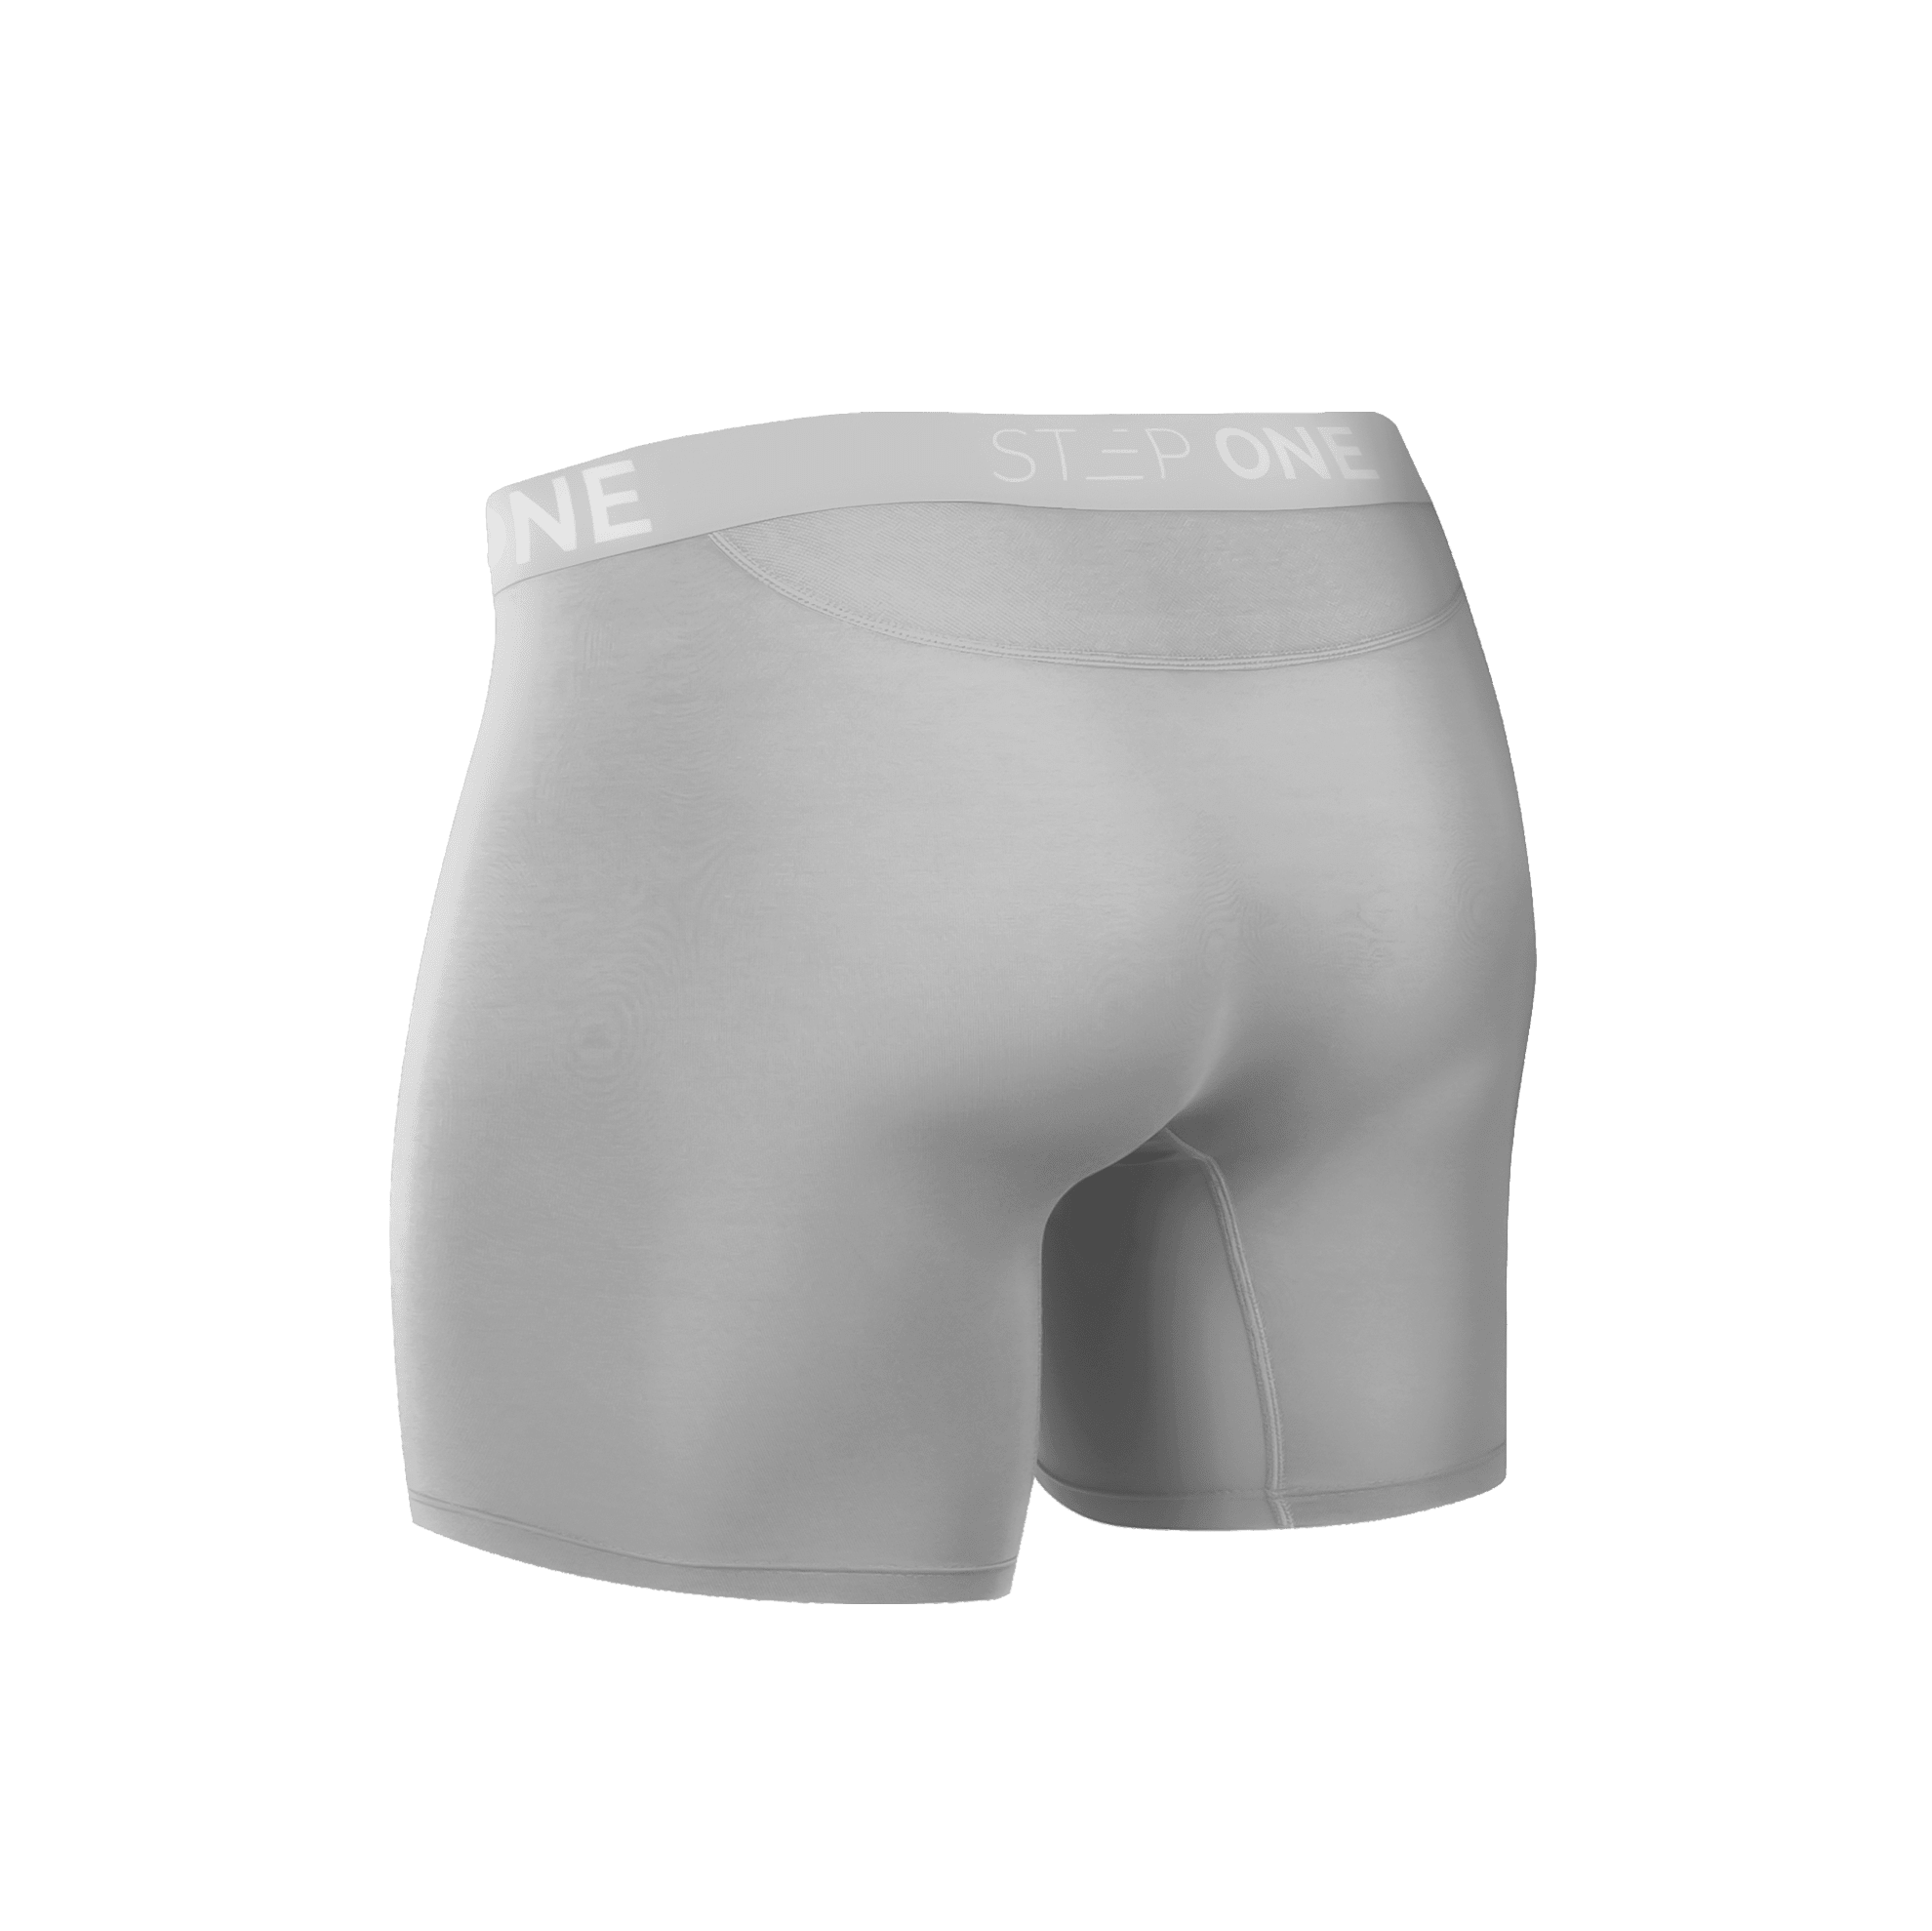 Trunk Underwear  Step One Men's Underwear